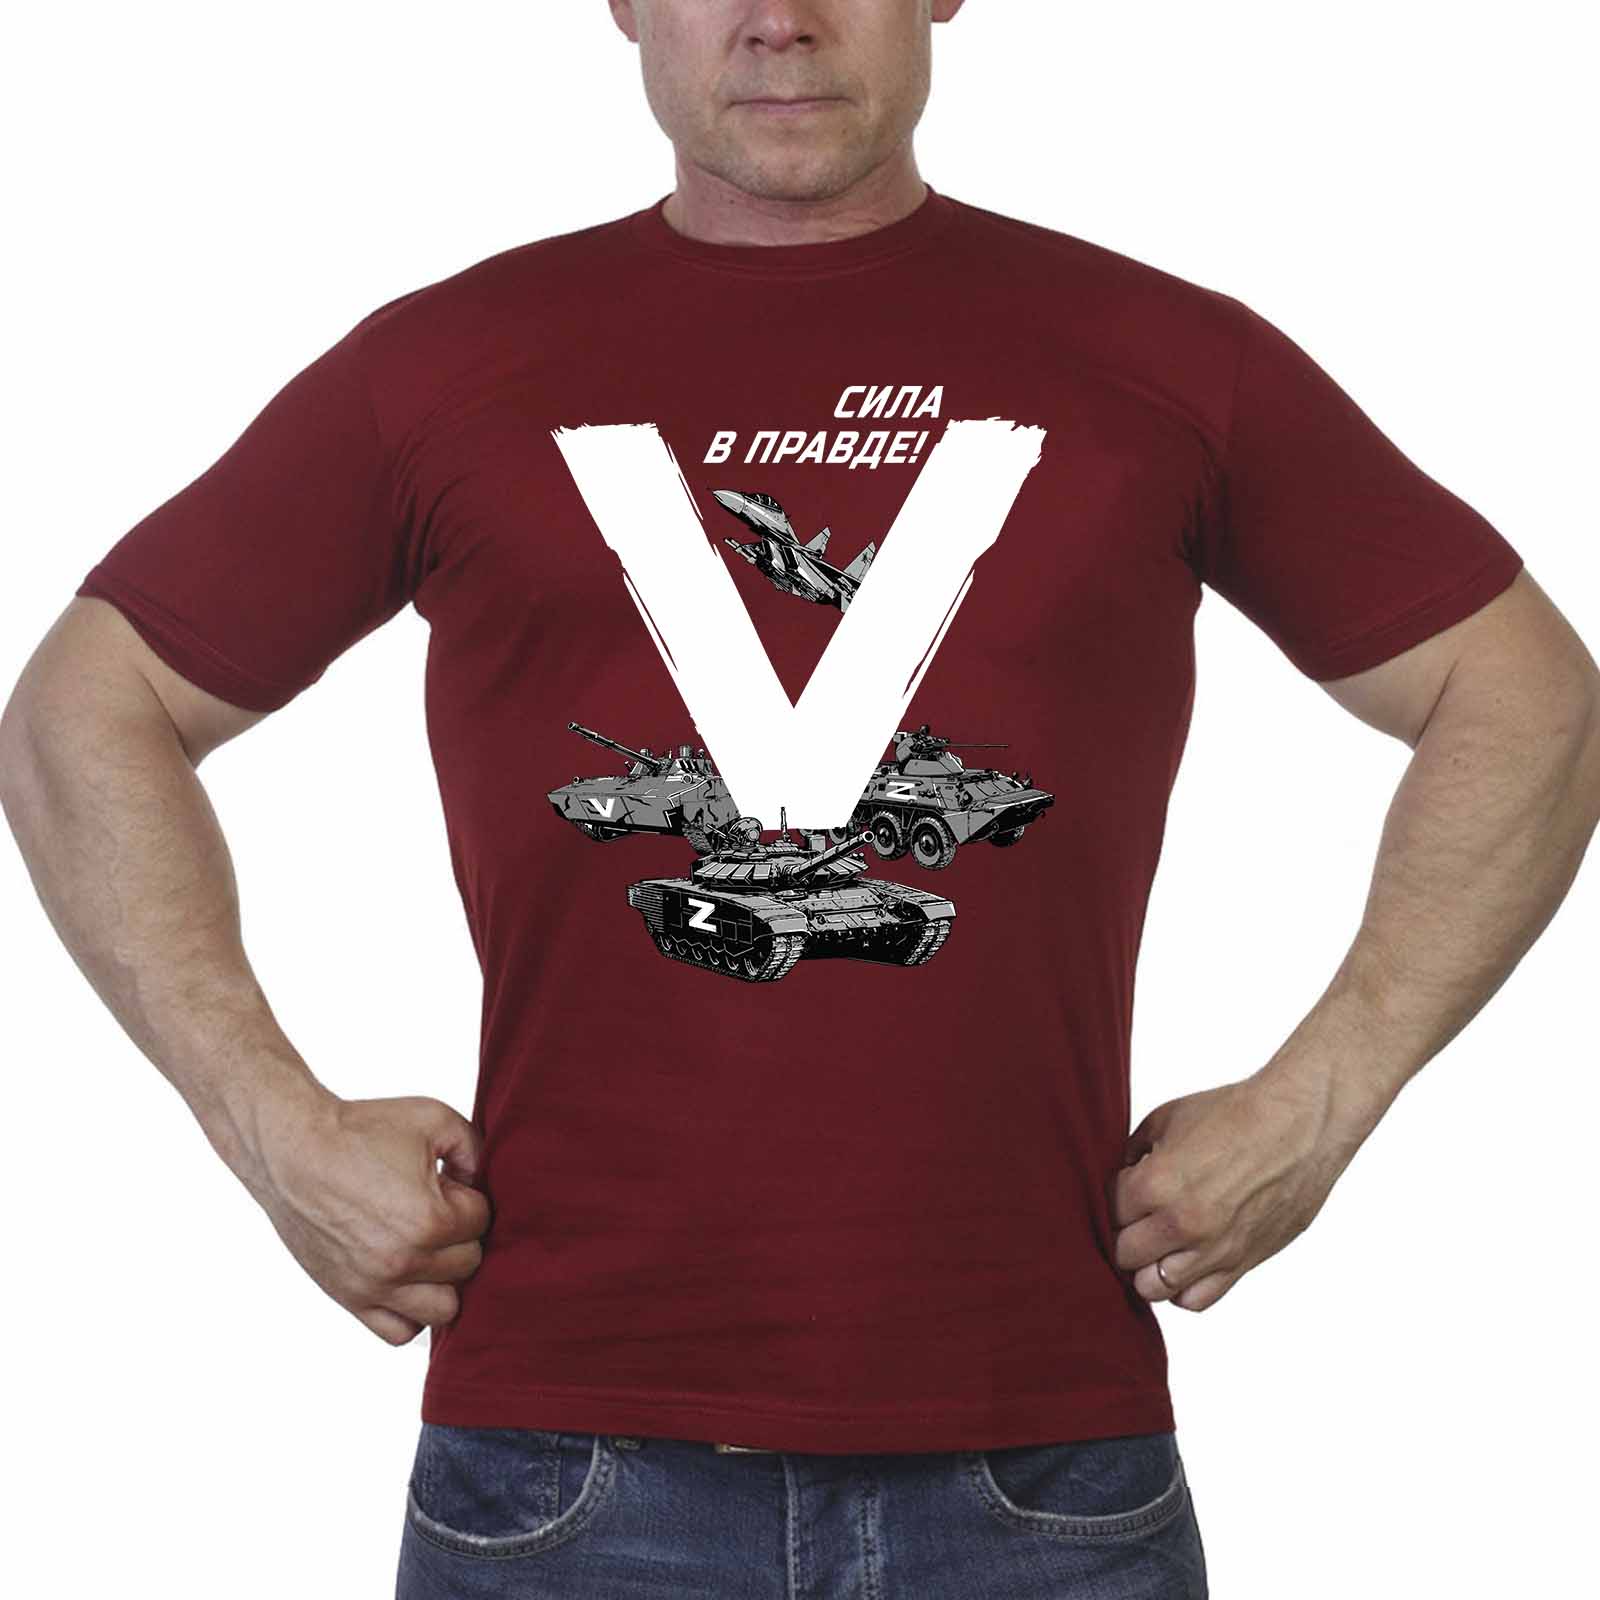 Купить футболку "V" в поддержку операции Z